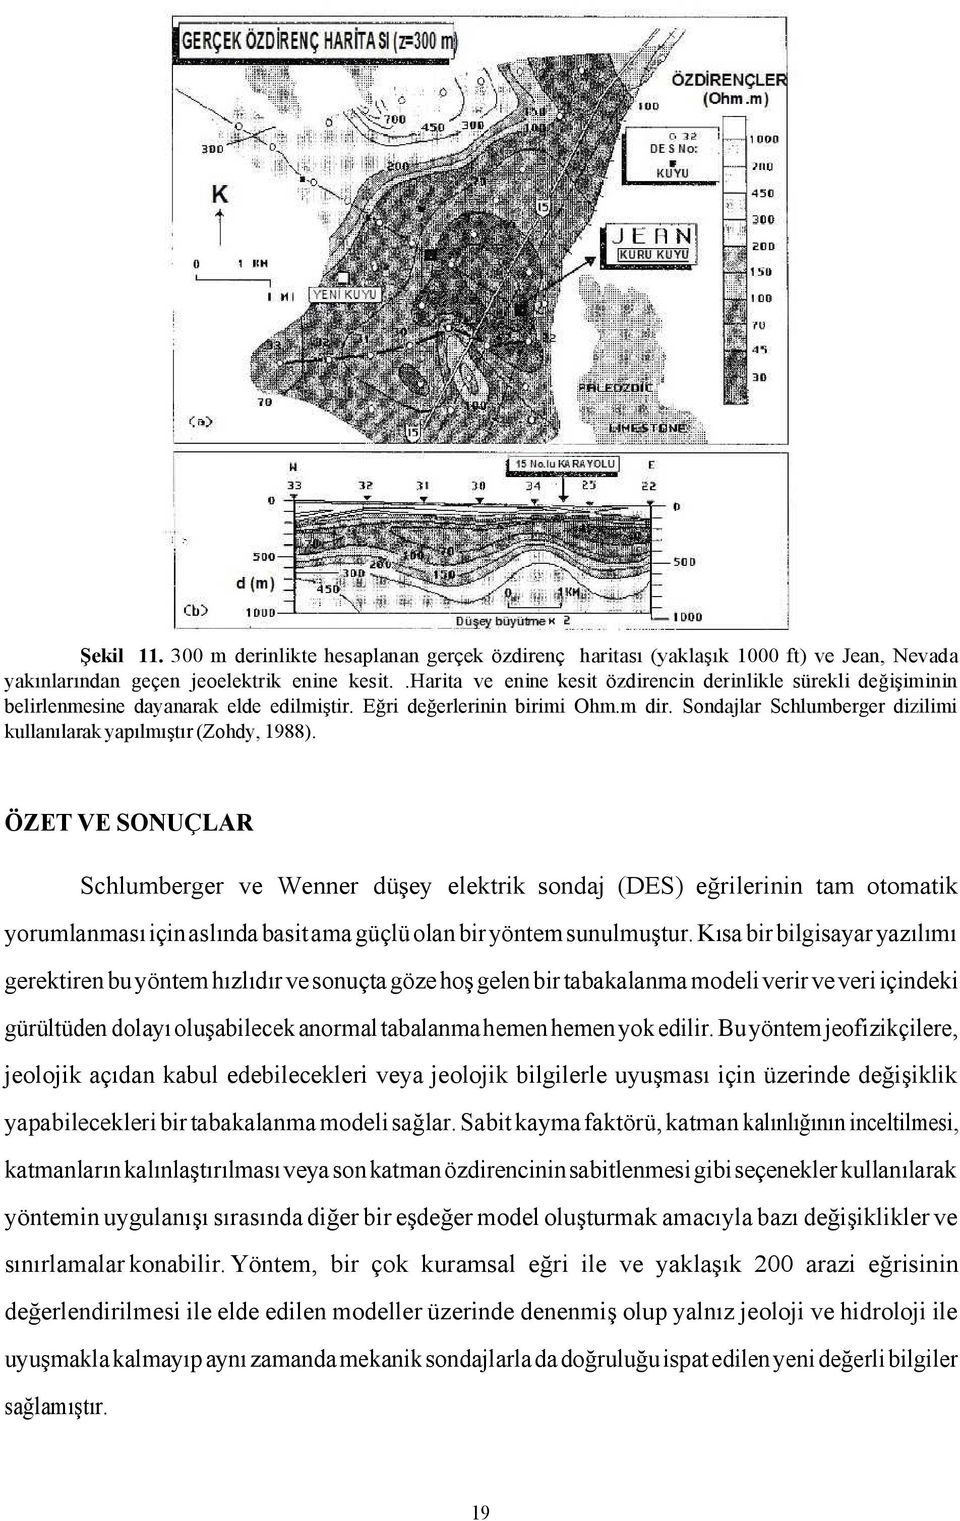 Sondajlar Schlumberger dizilimi kullanılarak yapılmıştır (Zohdy, 1988).